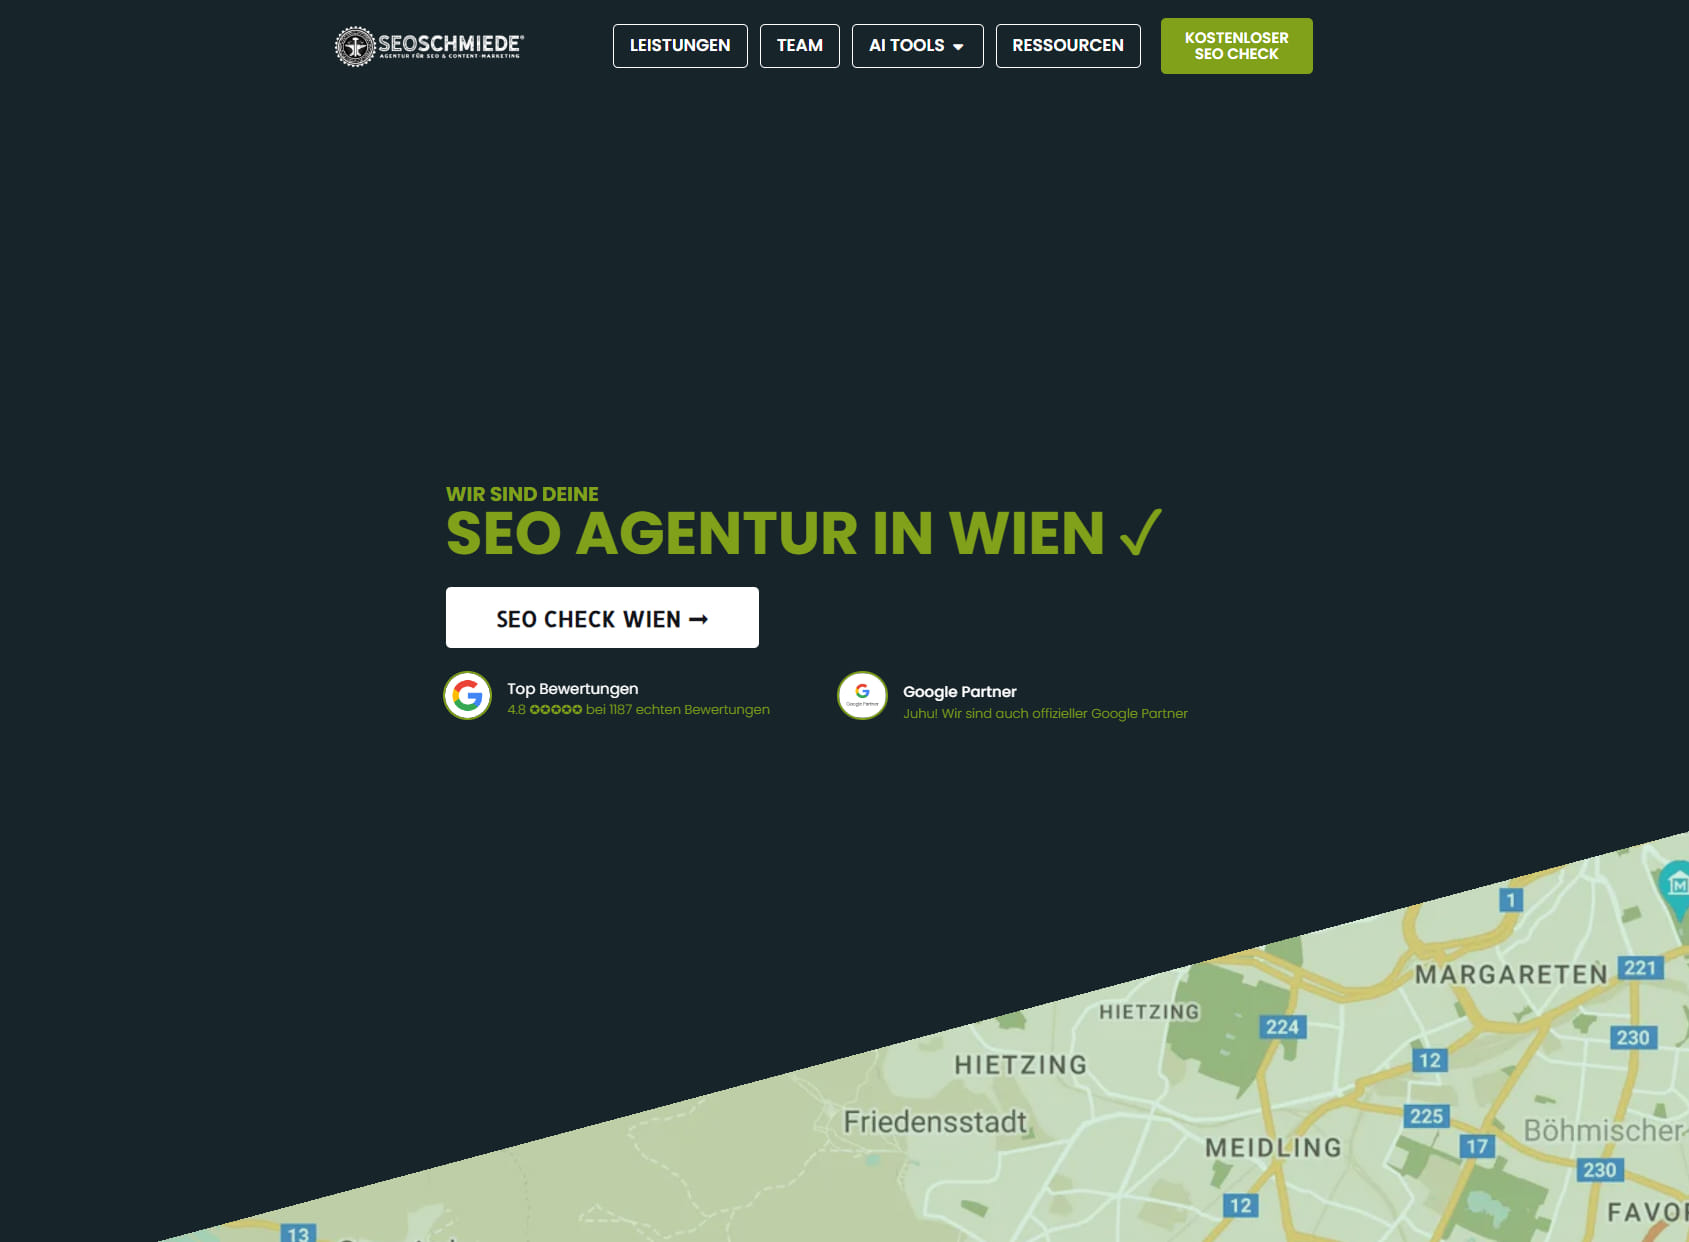 SEO Agentur Wien | SEOschmiede